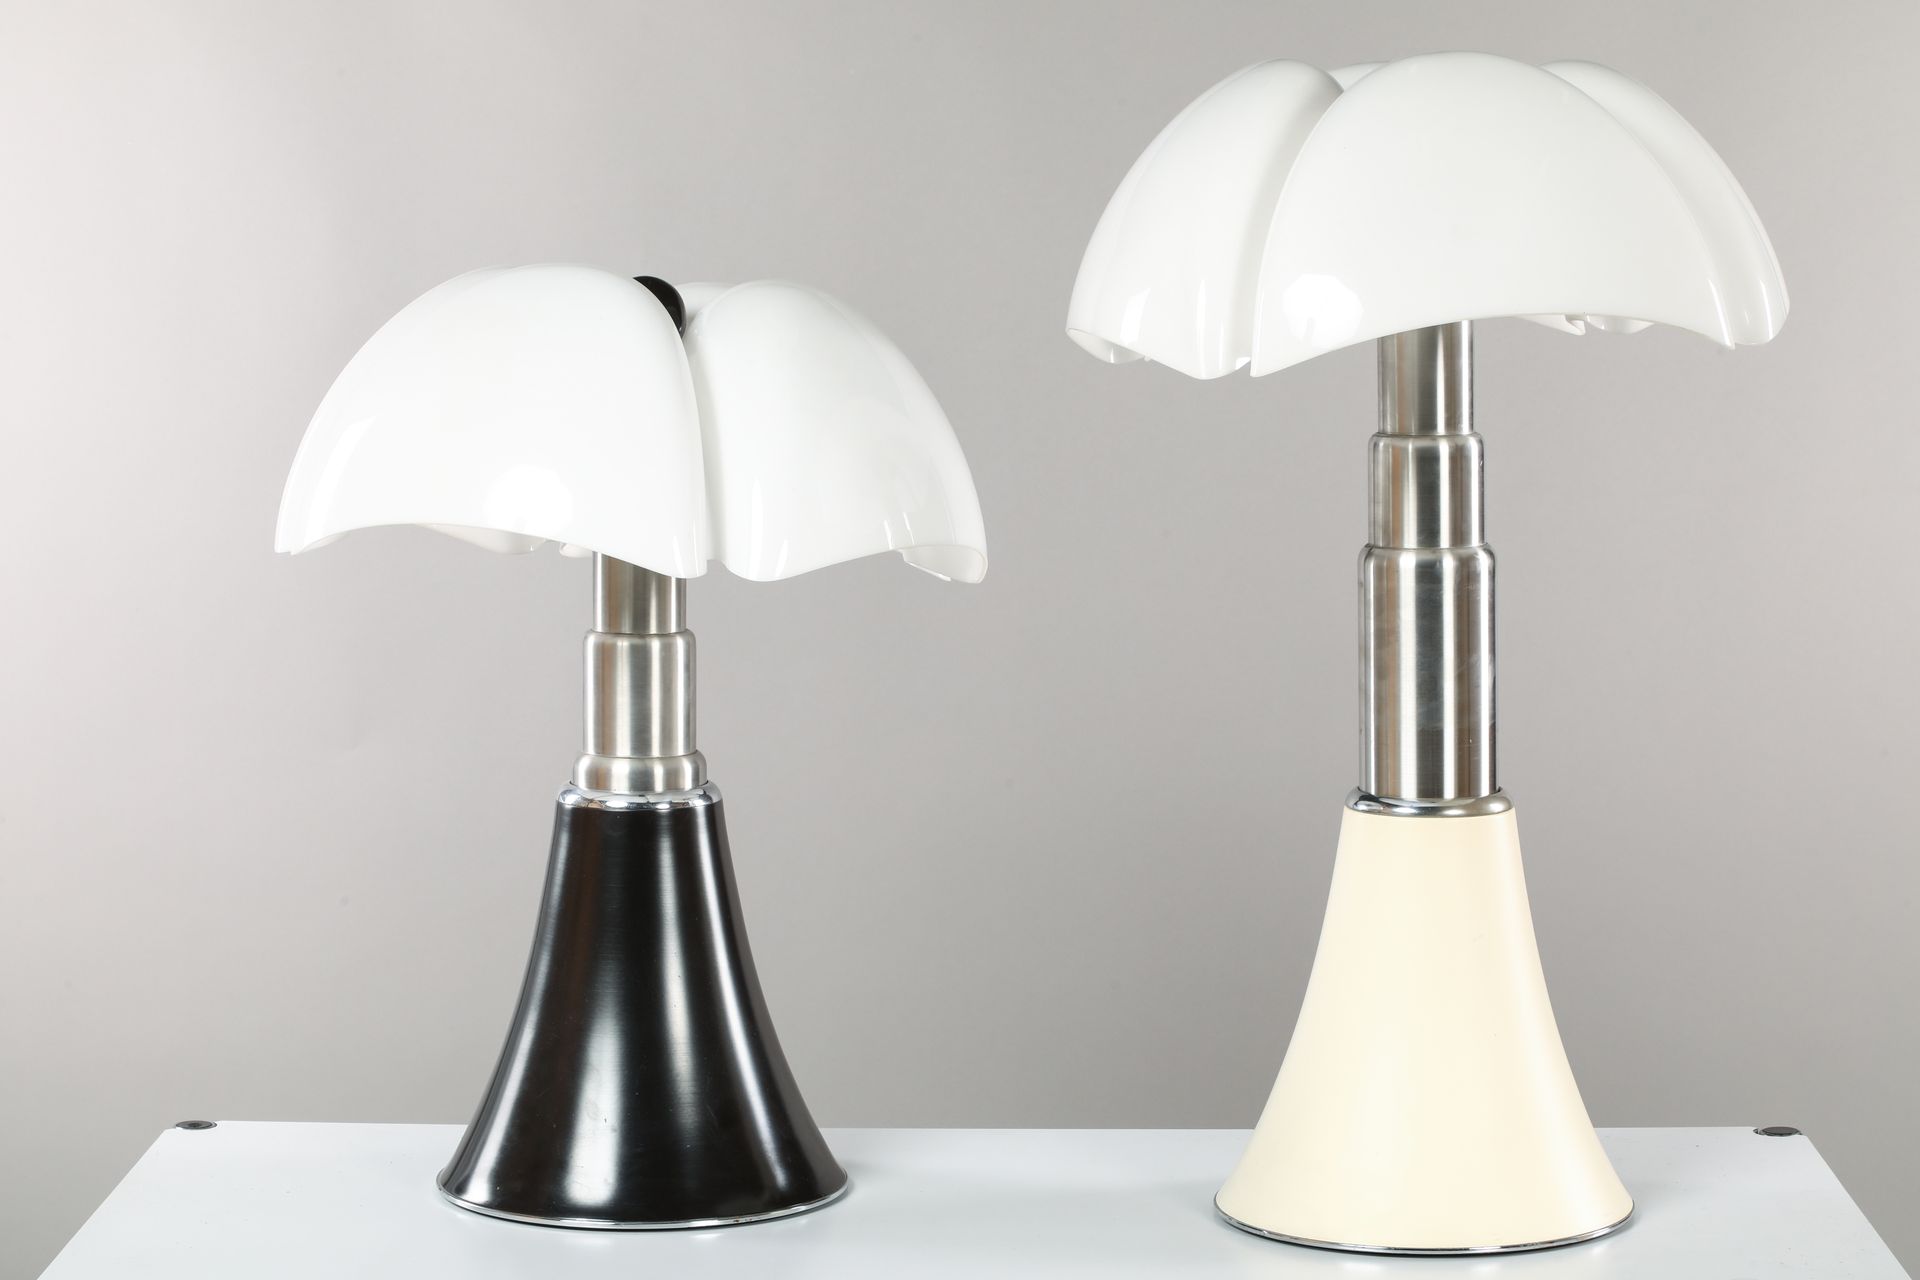 Lampe Pipistrello - 1965. Design Gae Aulenti - Edition…